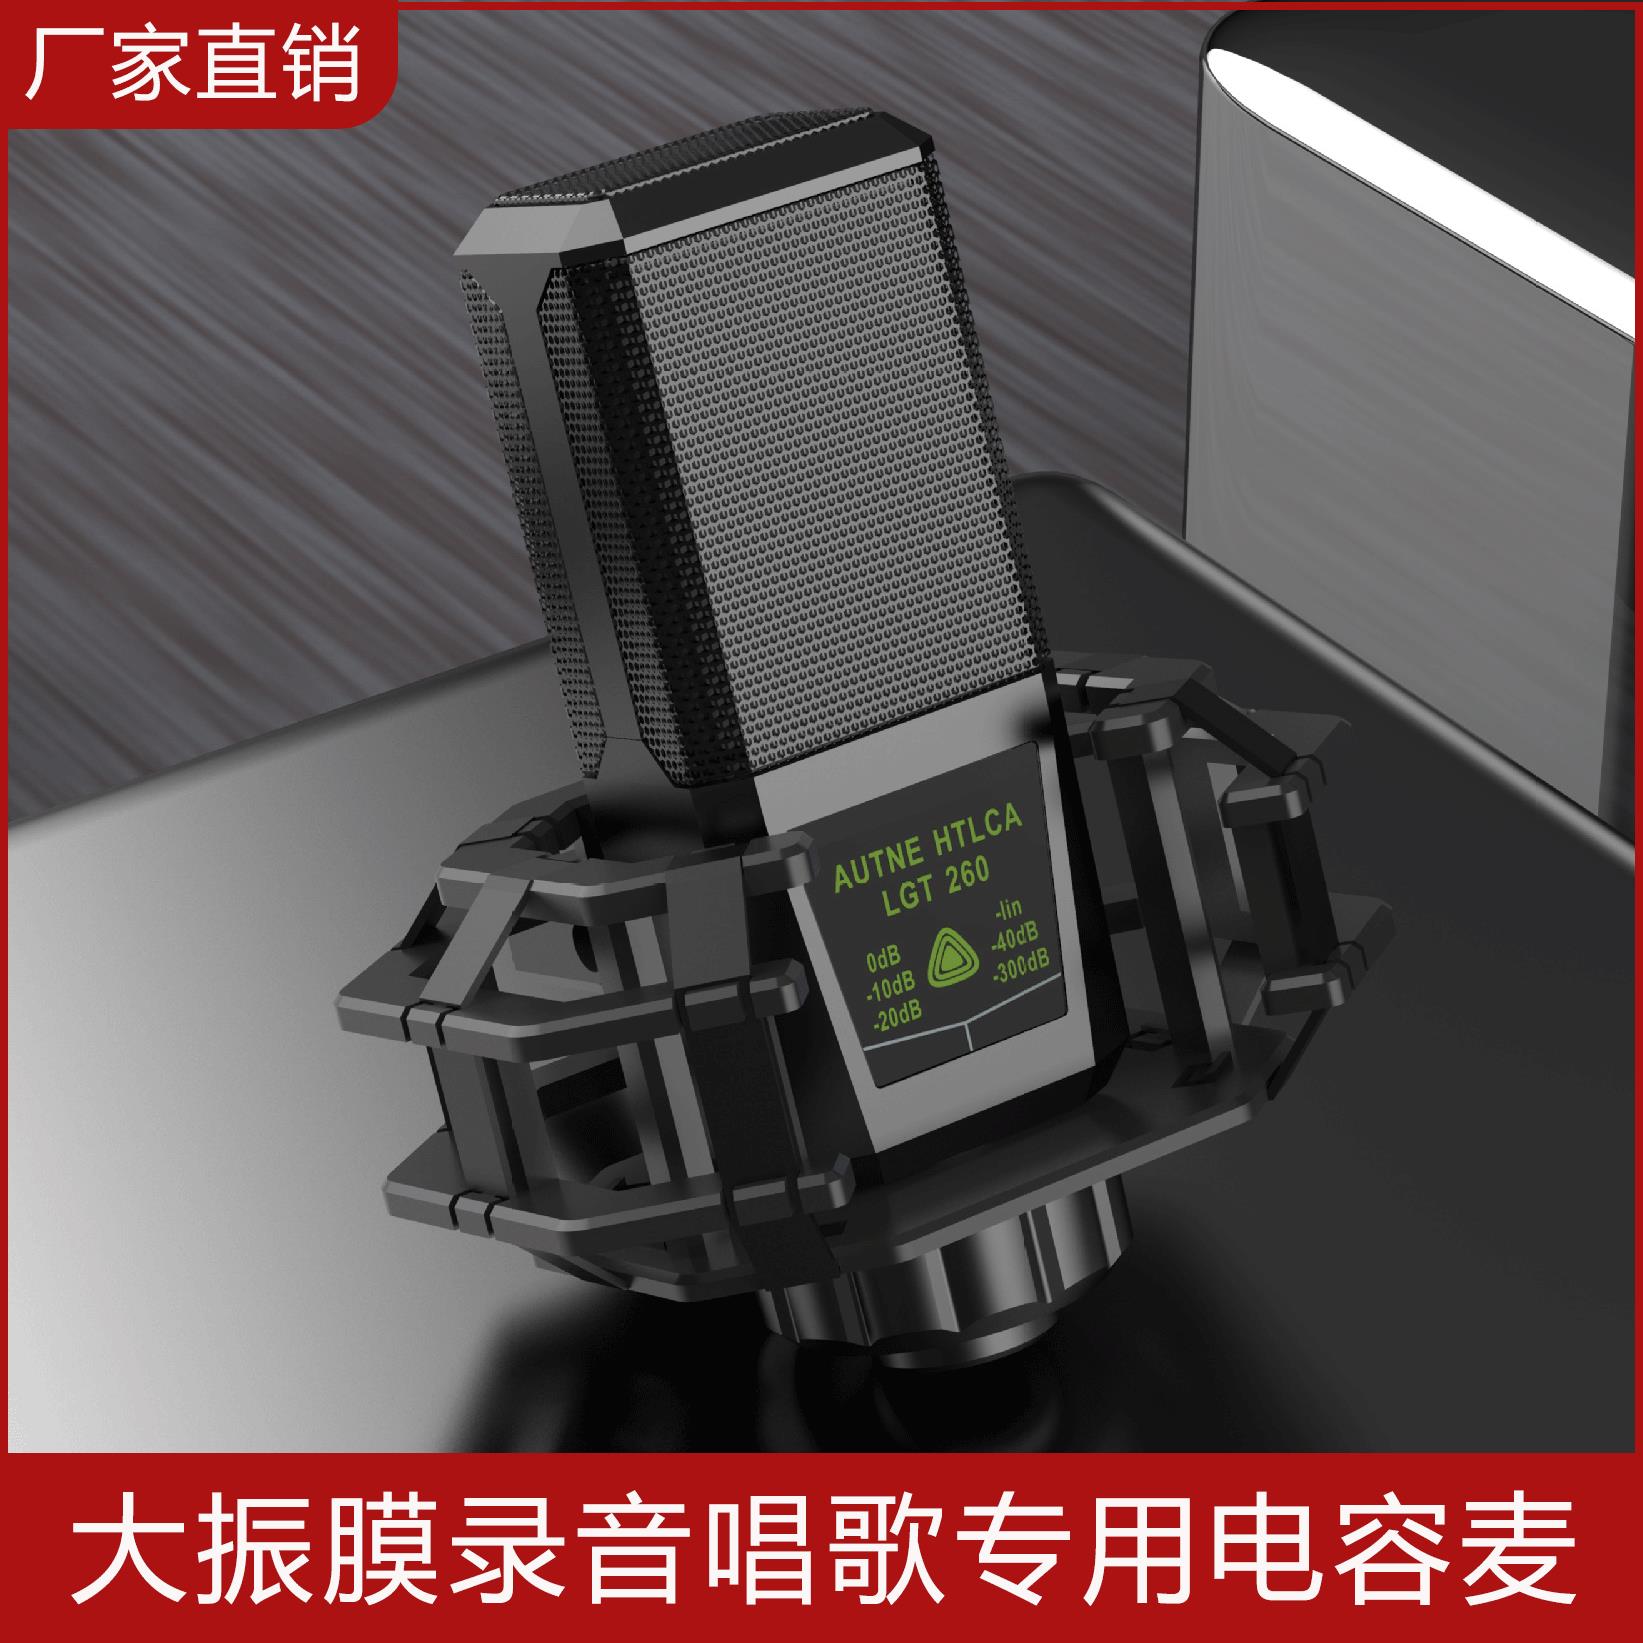 聲卡 唱歌聲卡 直播聲卡 240大振膜電容麥克風話筒K歌聲卡唱歌手機專用直播錄音網紅套裝『xy13276』